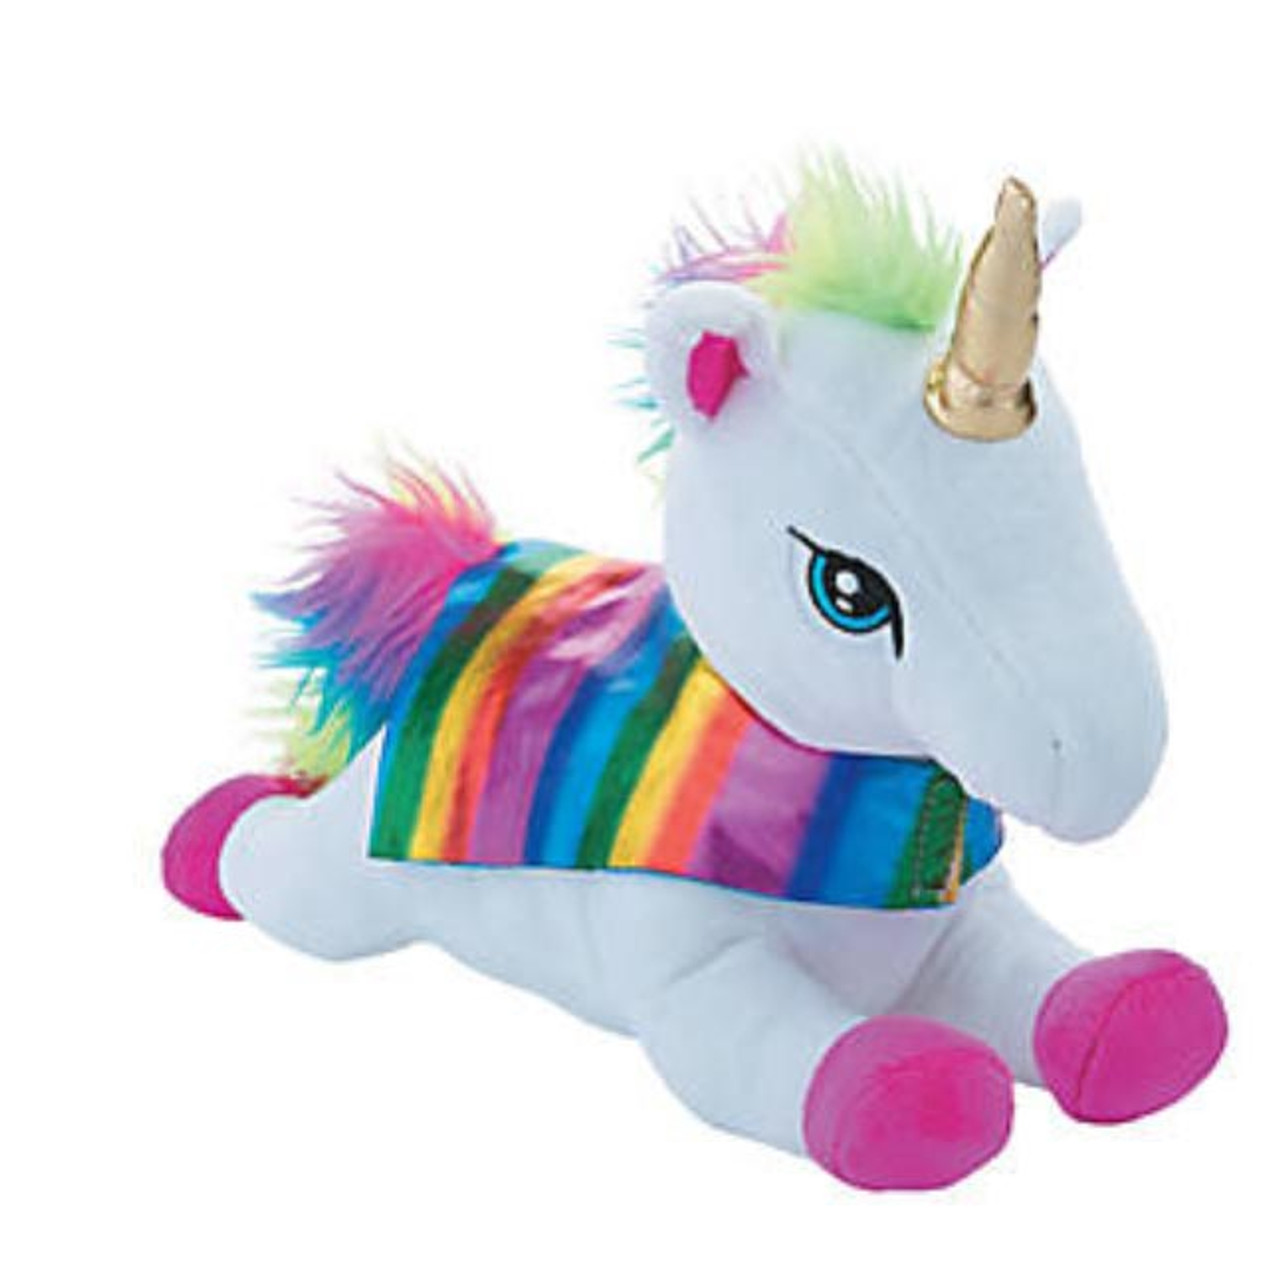 Plush Soft Unicorn Toy Stuffed Animal